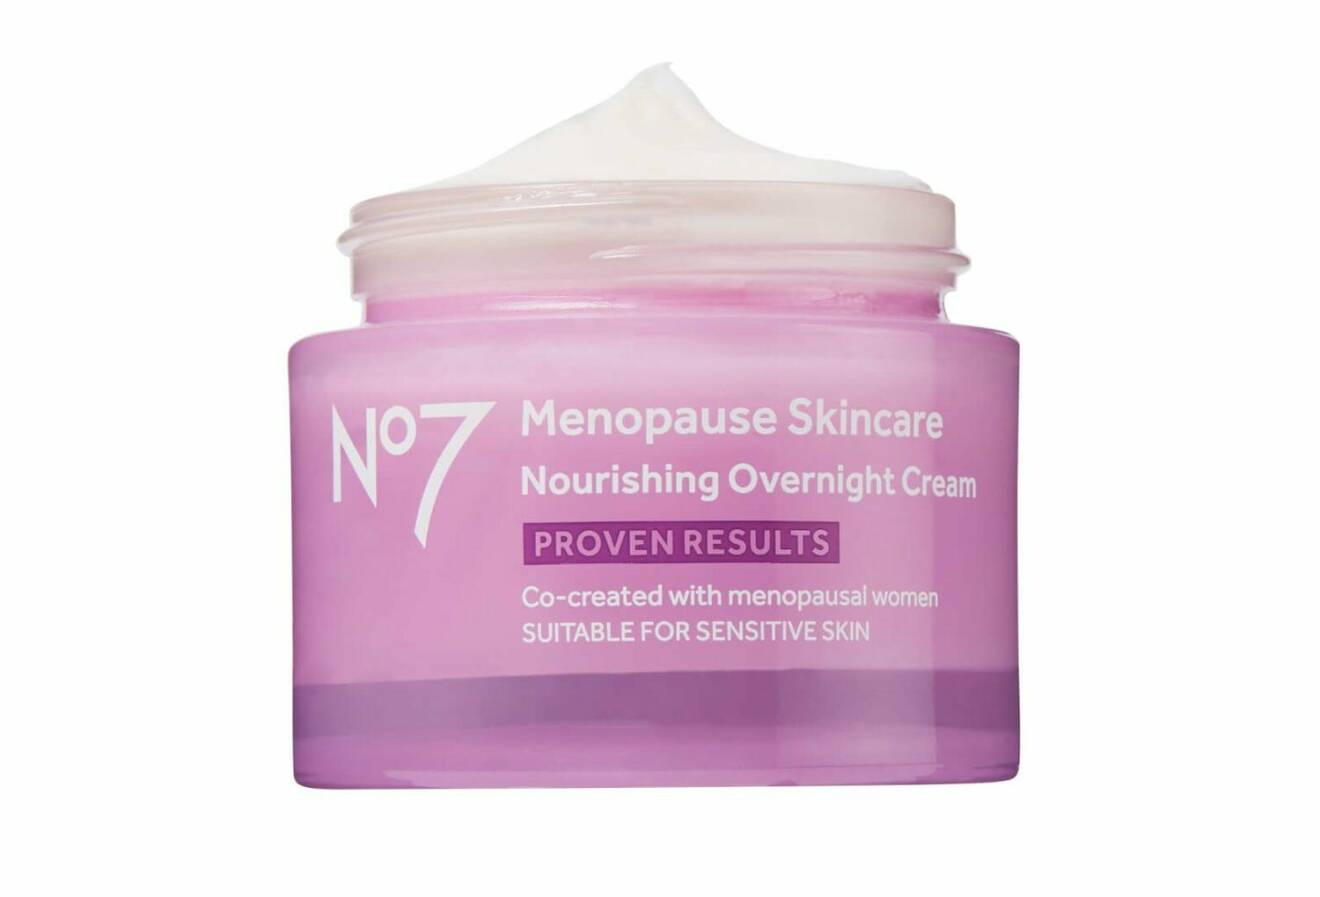 Menopause skincare nourishing overnight cream från N°7